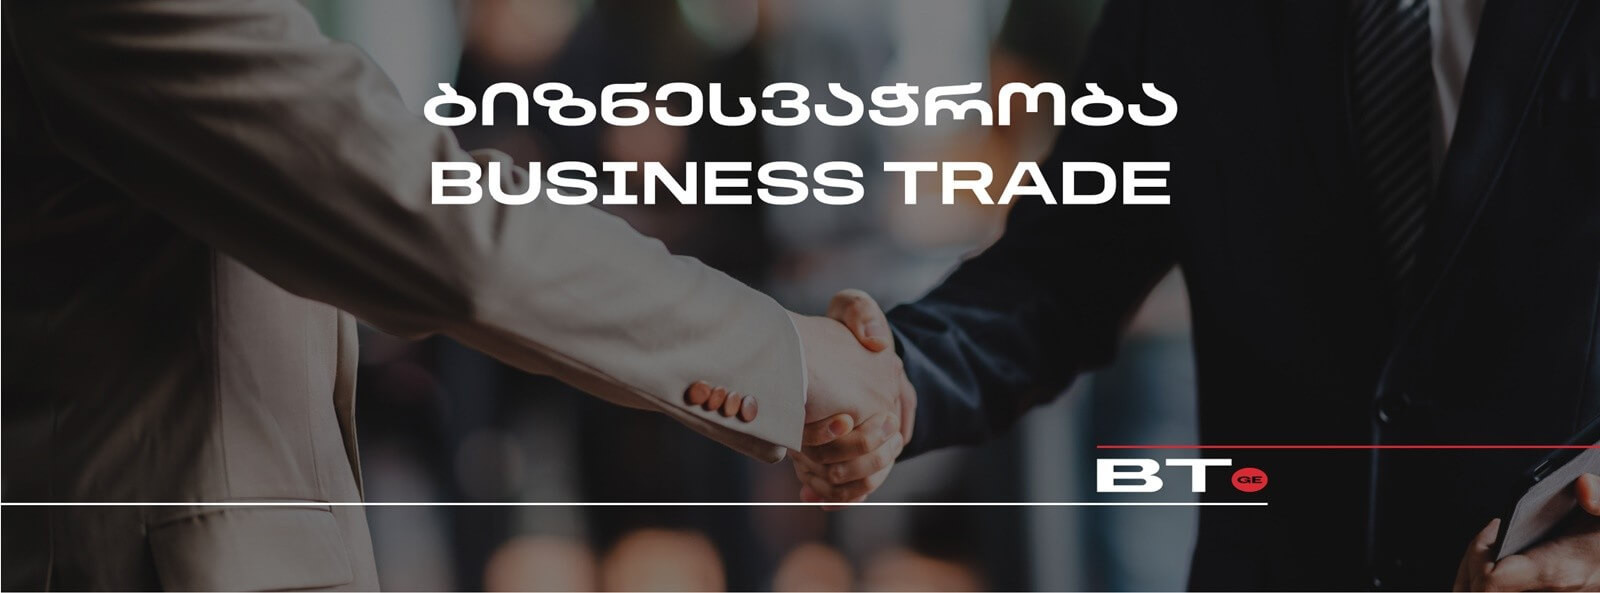 ბიზნესვაჭრობა • Business Trade - GGM-ის ახალი პროექტი 